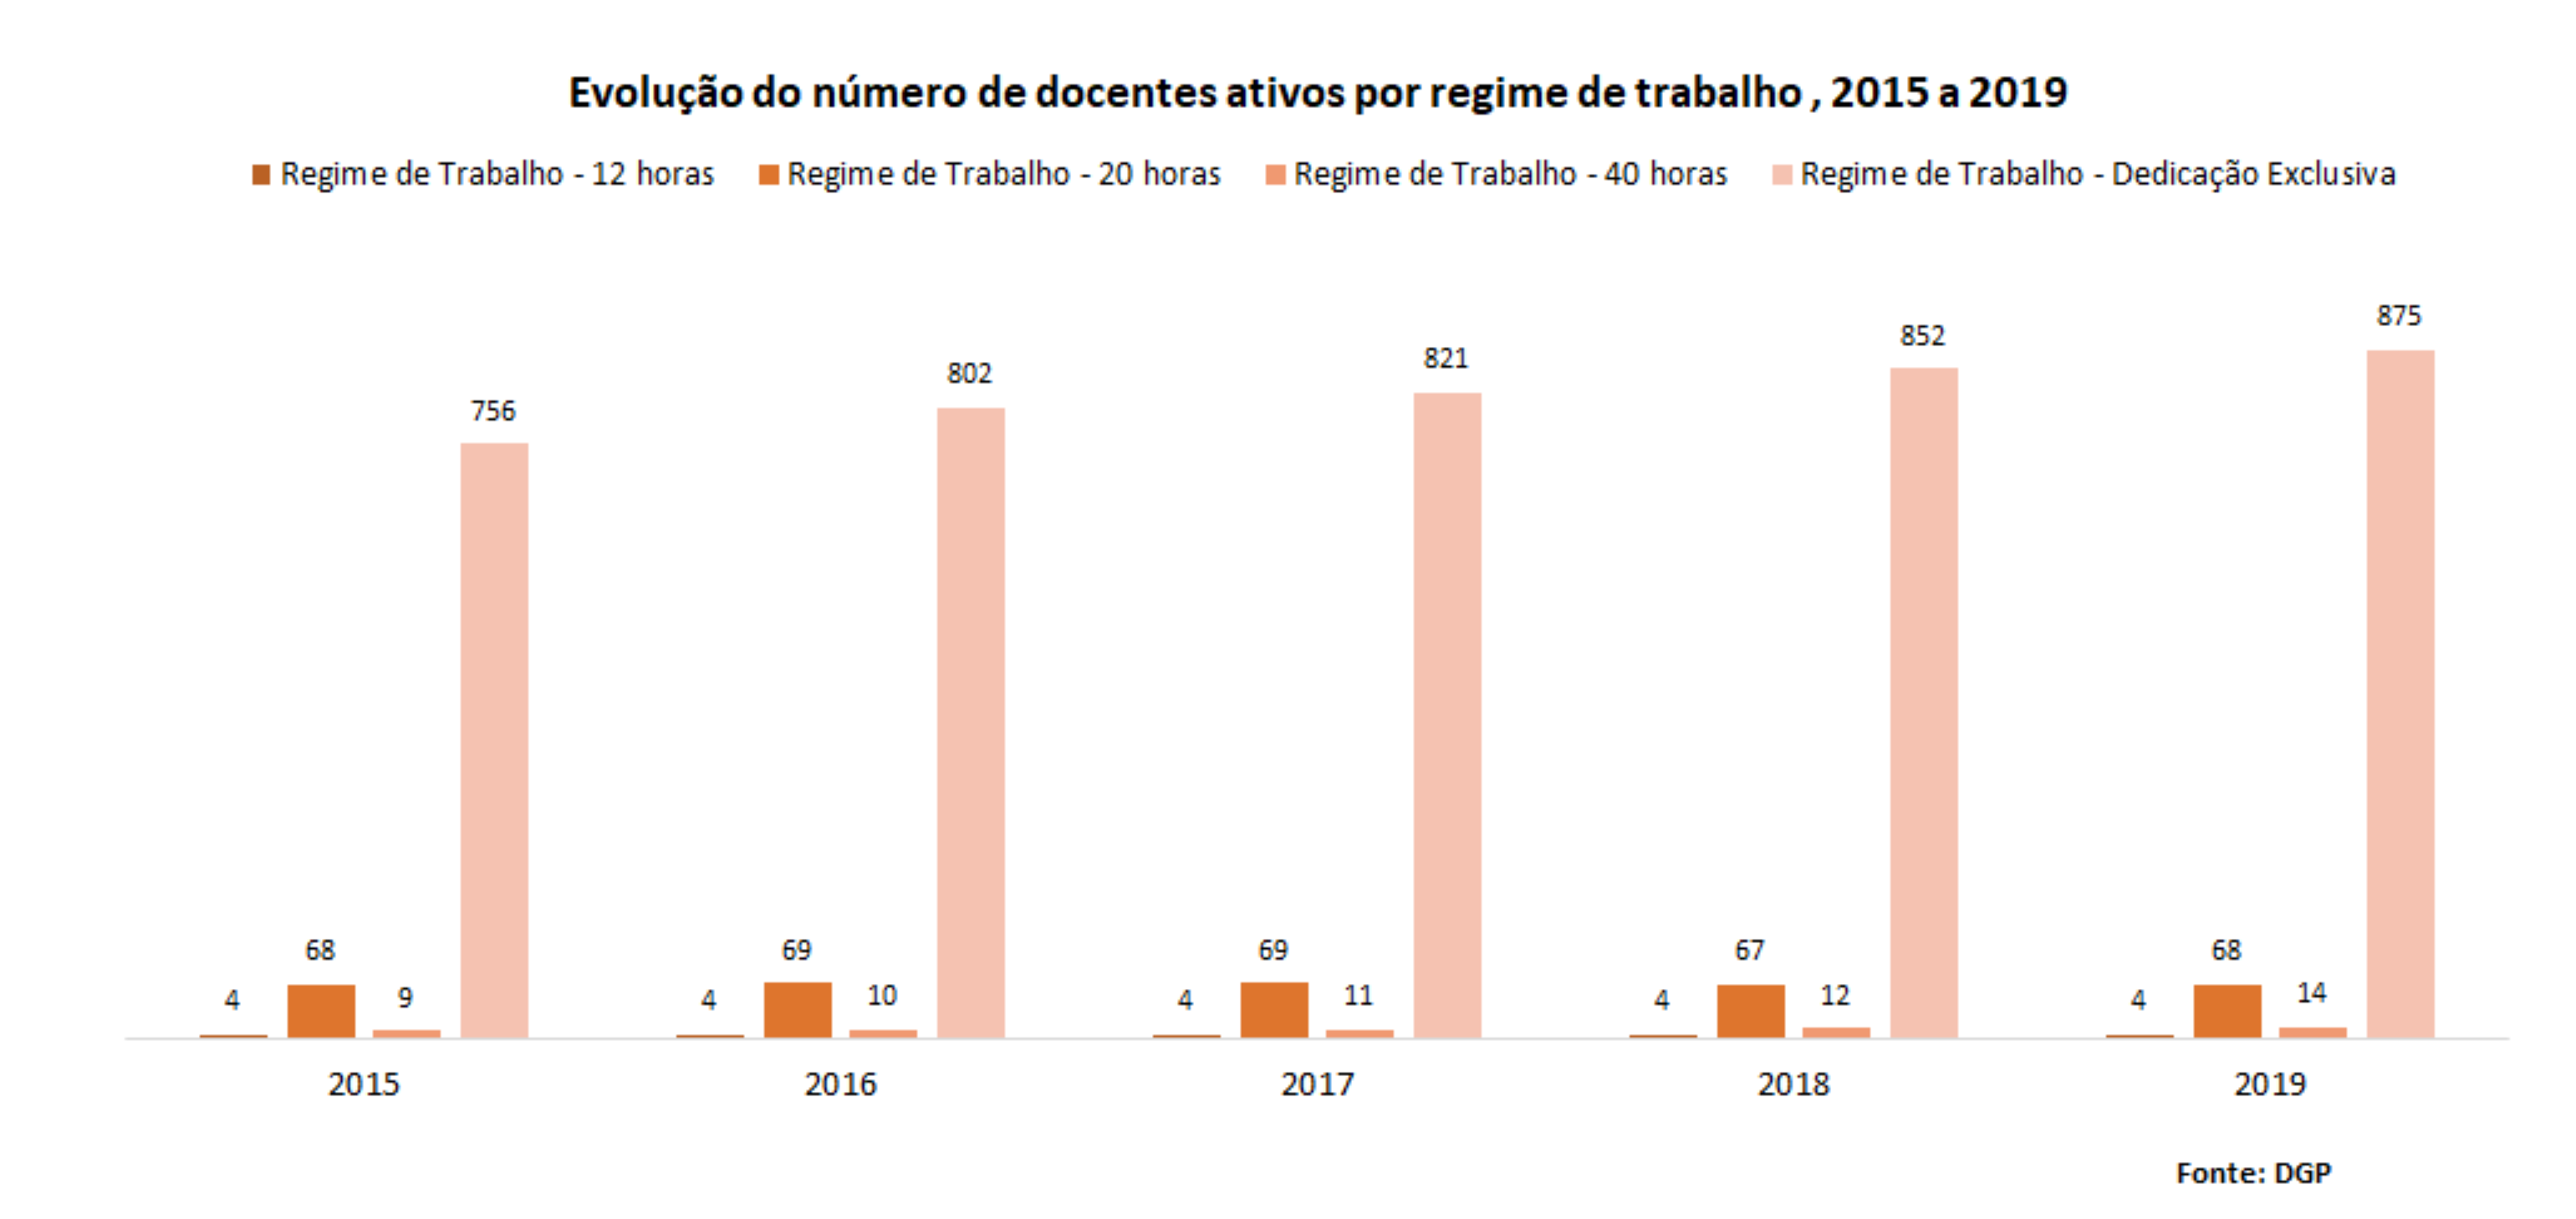 Evolução do número de docentes inativos por regime de trabalho, 2015 a 2019